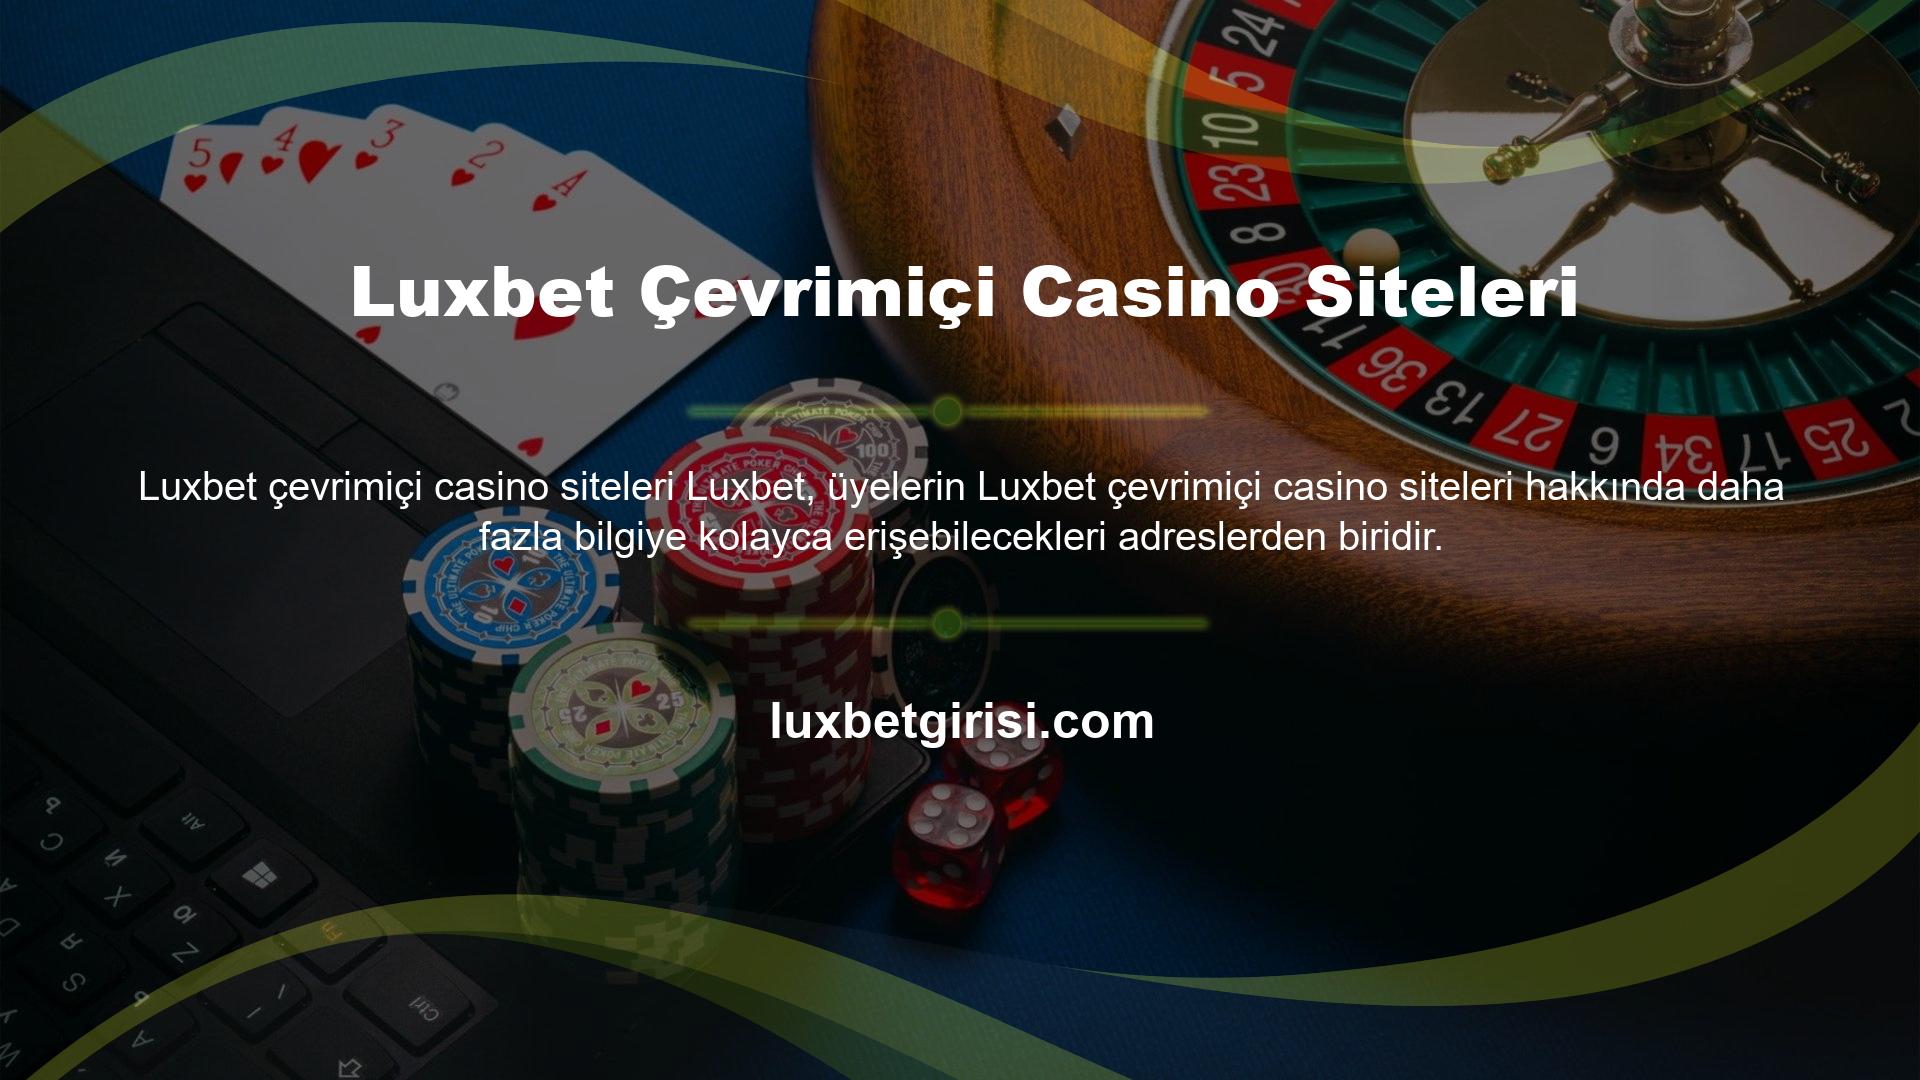 Luxbet Çevrimiçi Casino Siteleri